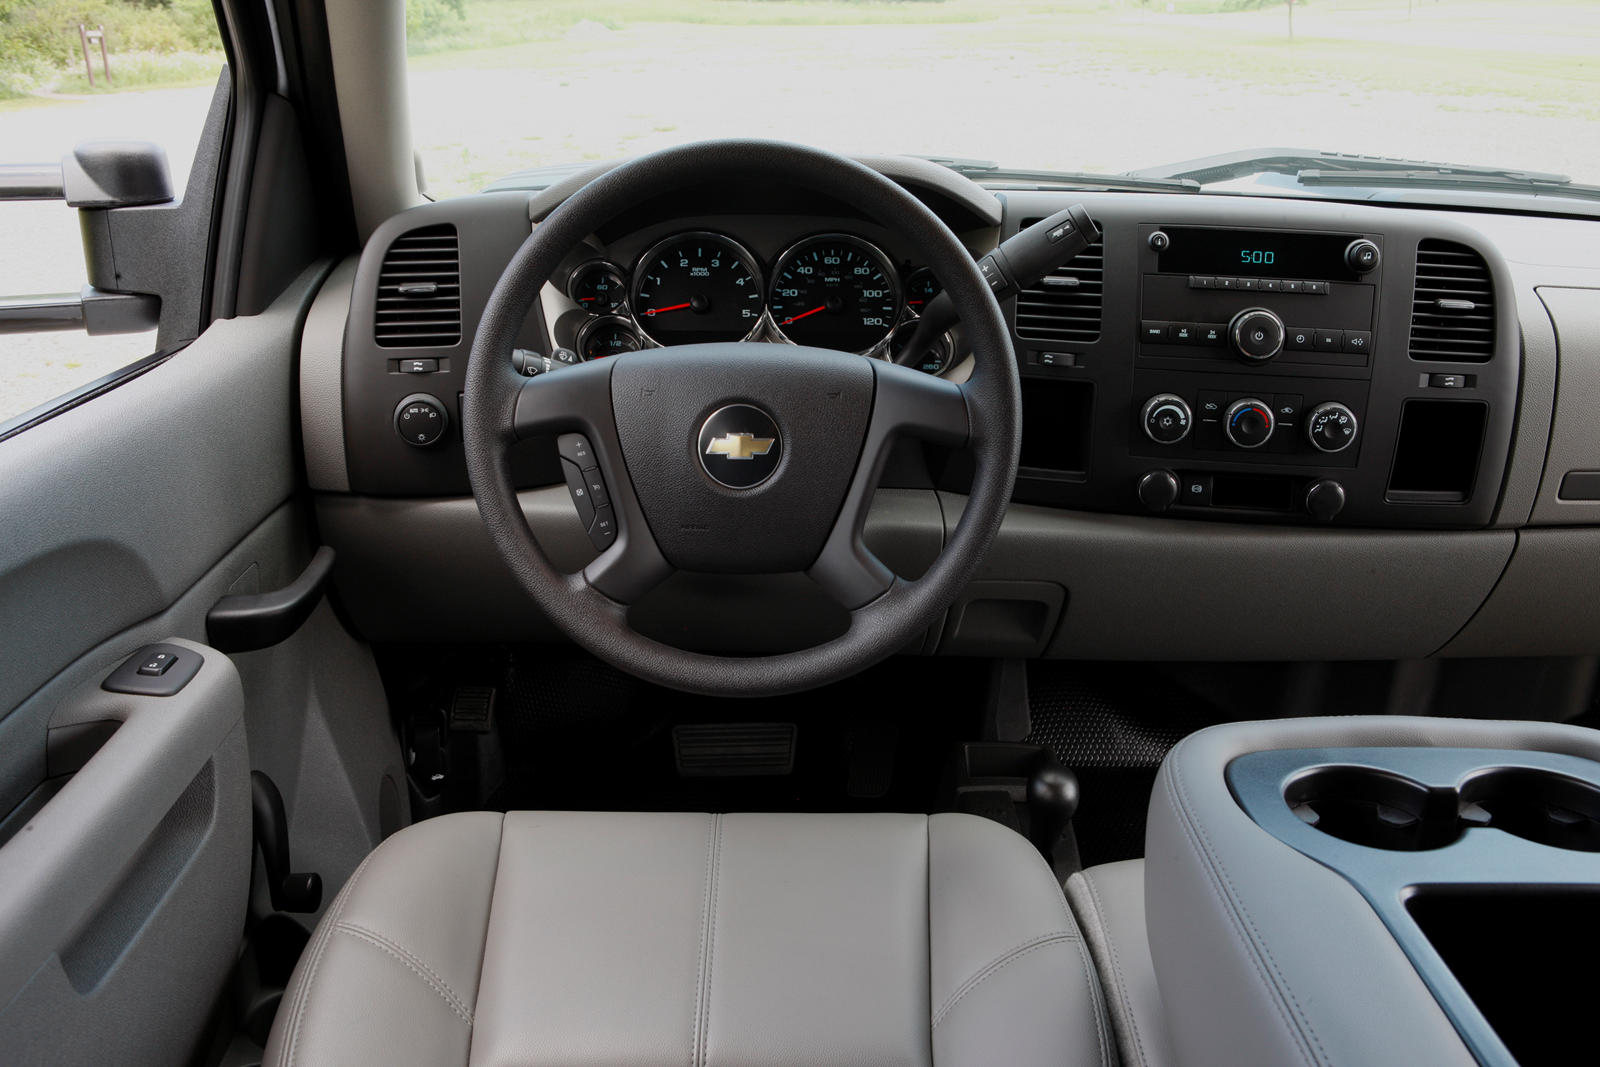 2011 Chevrolet Silverado 2500HD Steering Wheel